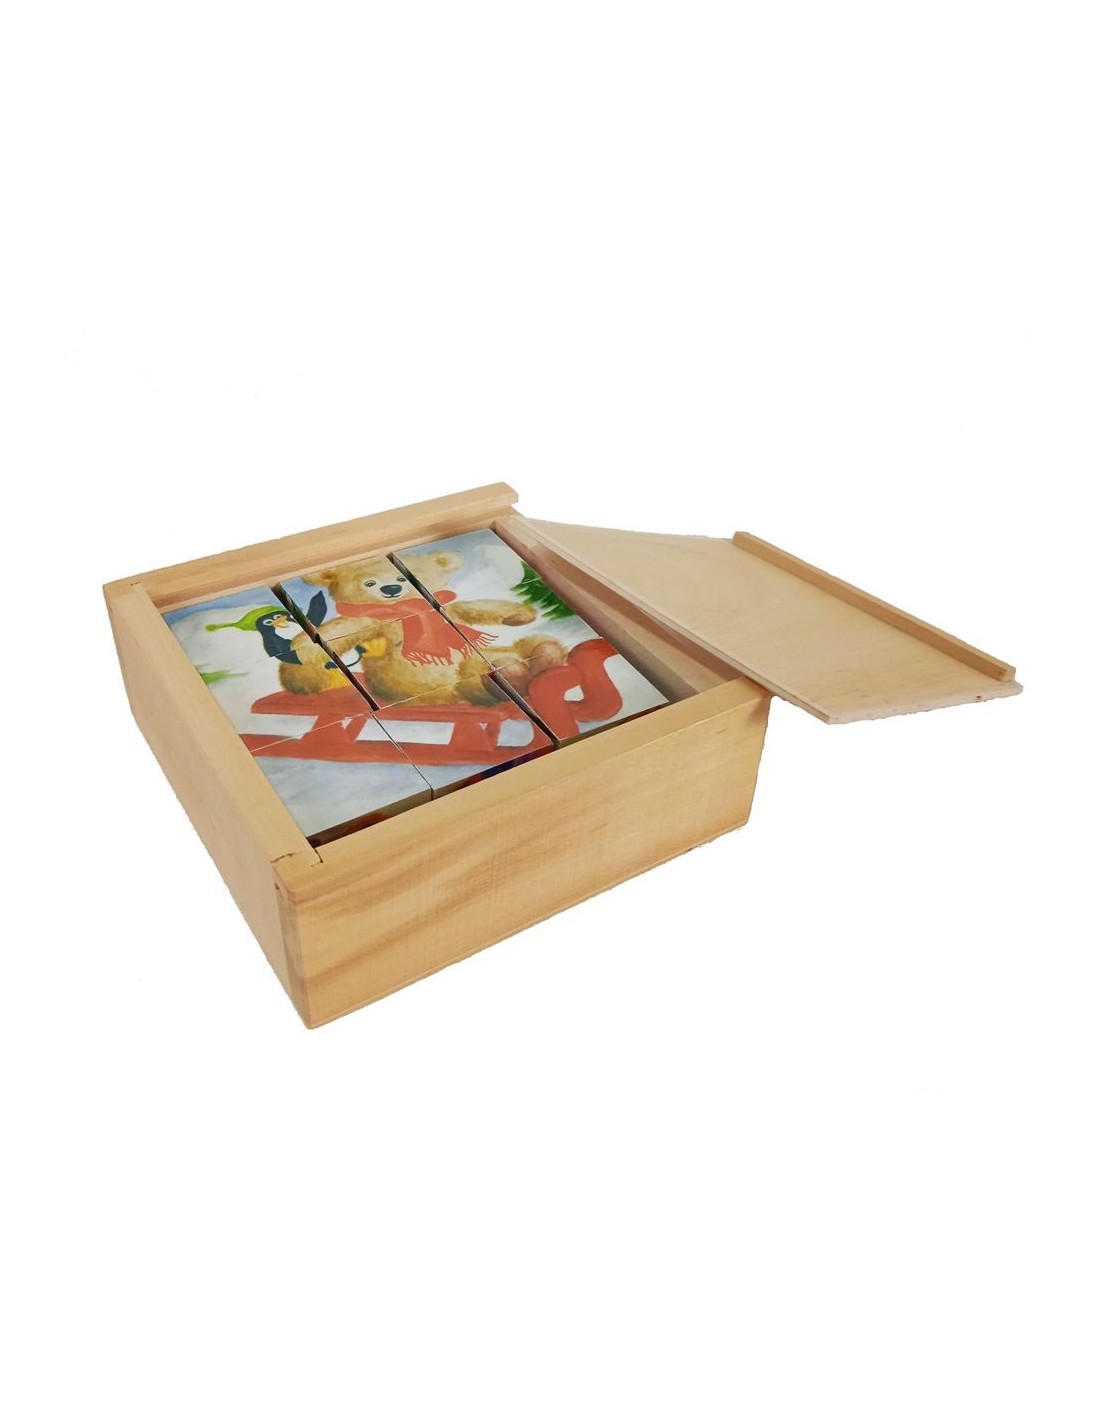 Puzzle de nueve dados en caja de madera con dibujos de osos, juego de encajar infantil para la motricidad.